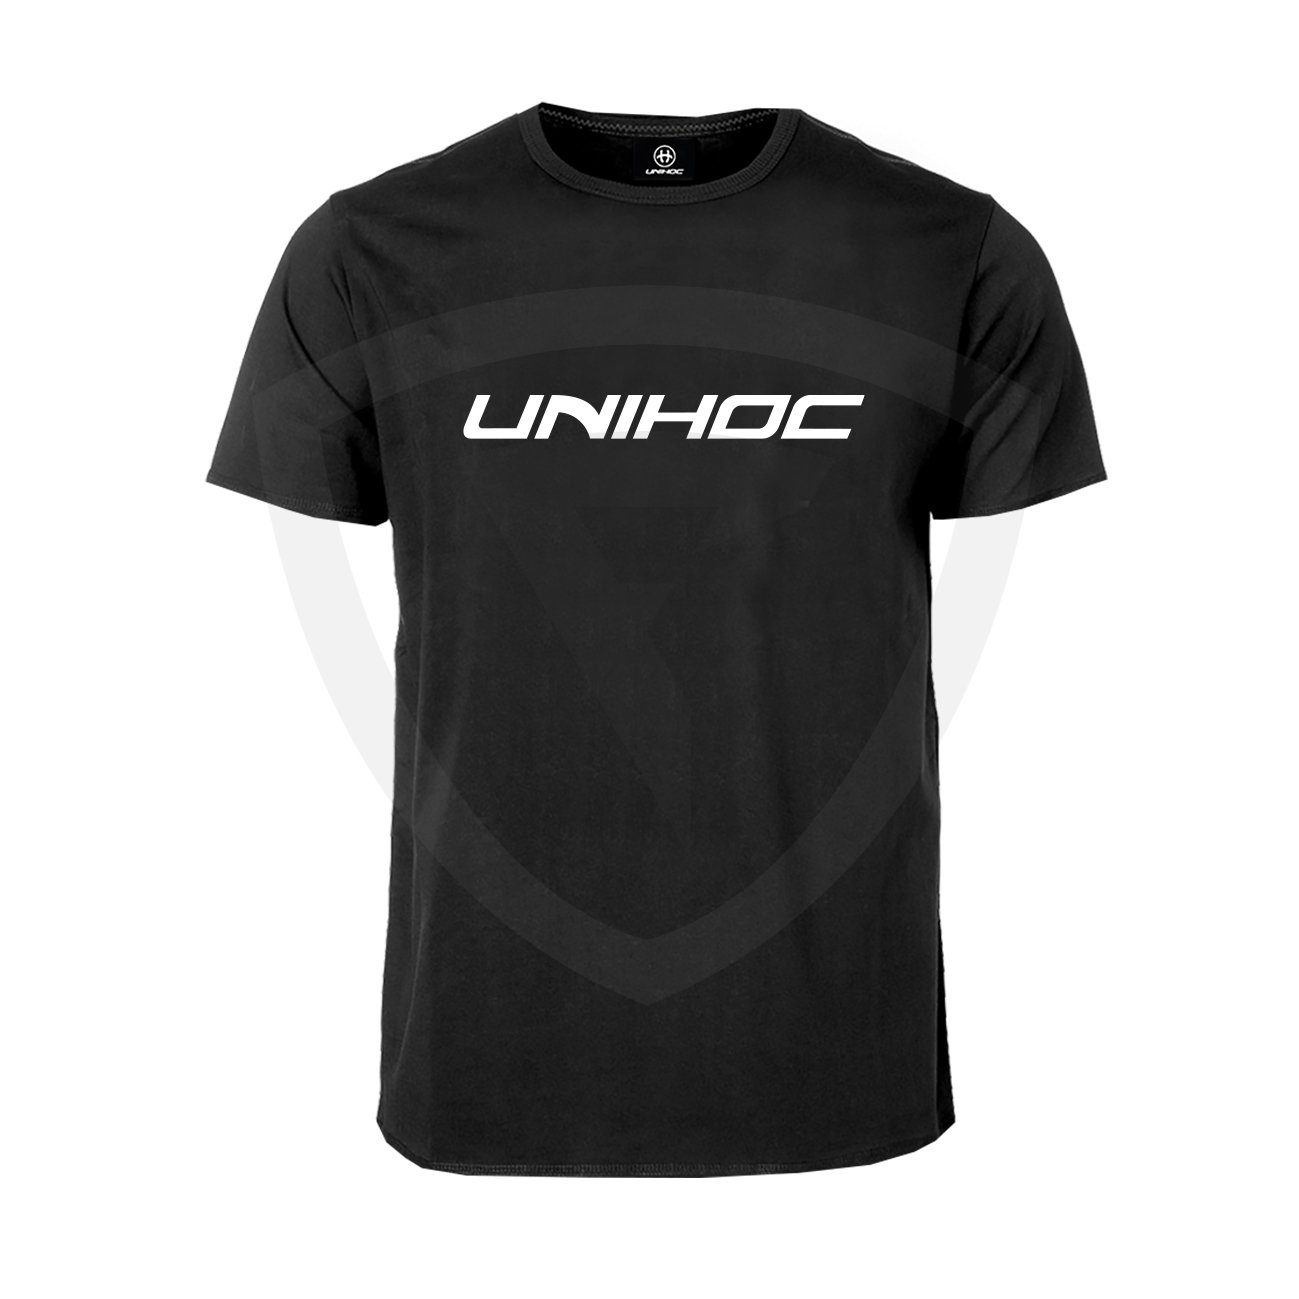 Unihoc T-shirt Classic Black JR 140 černá